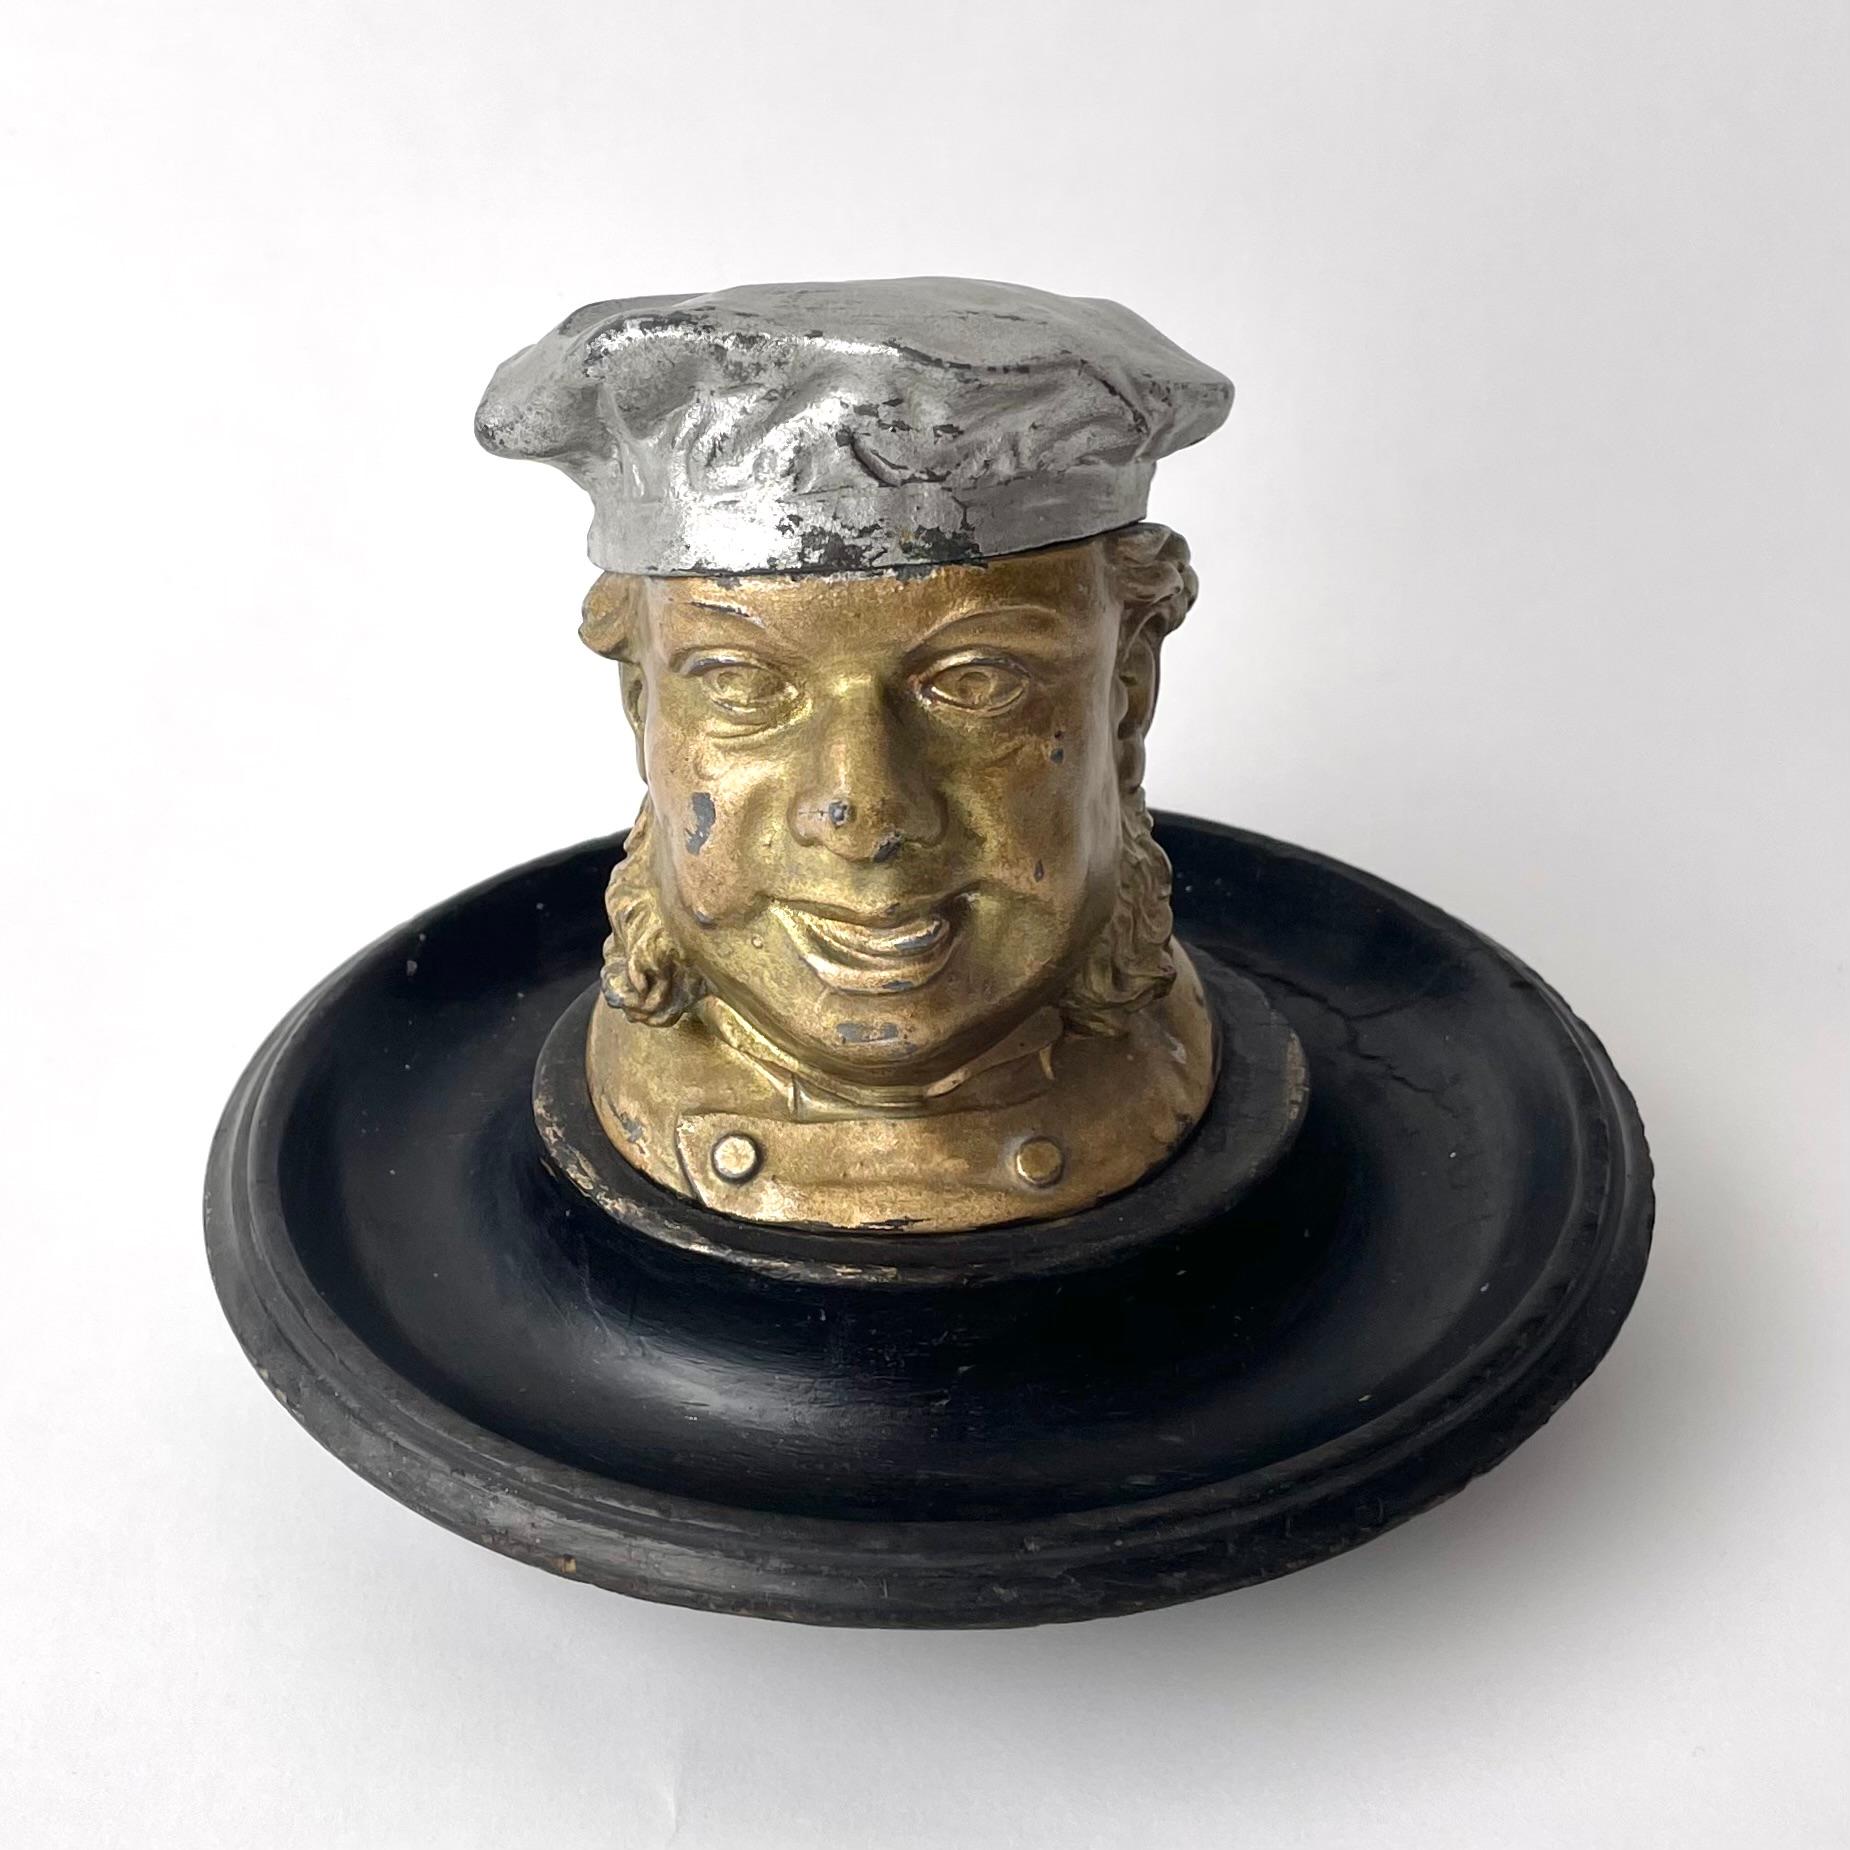 Charmantes Tintenfass/Tintenständer in Form eines Männerkopfes, weiß lackiertes Metall und patiniertes Holz. Hergestellt in England im 19. Jahrhundert.

Ein einfach charmantes Tintenfass besteht aus einem bemalten, gedrechselten Holzsockel, auf dem